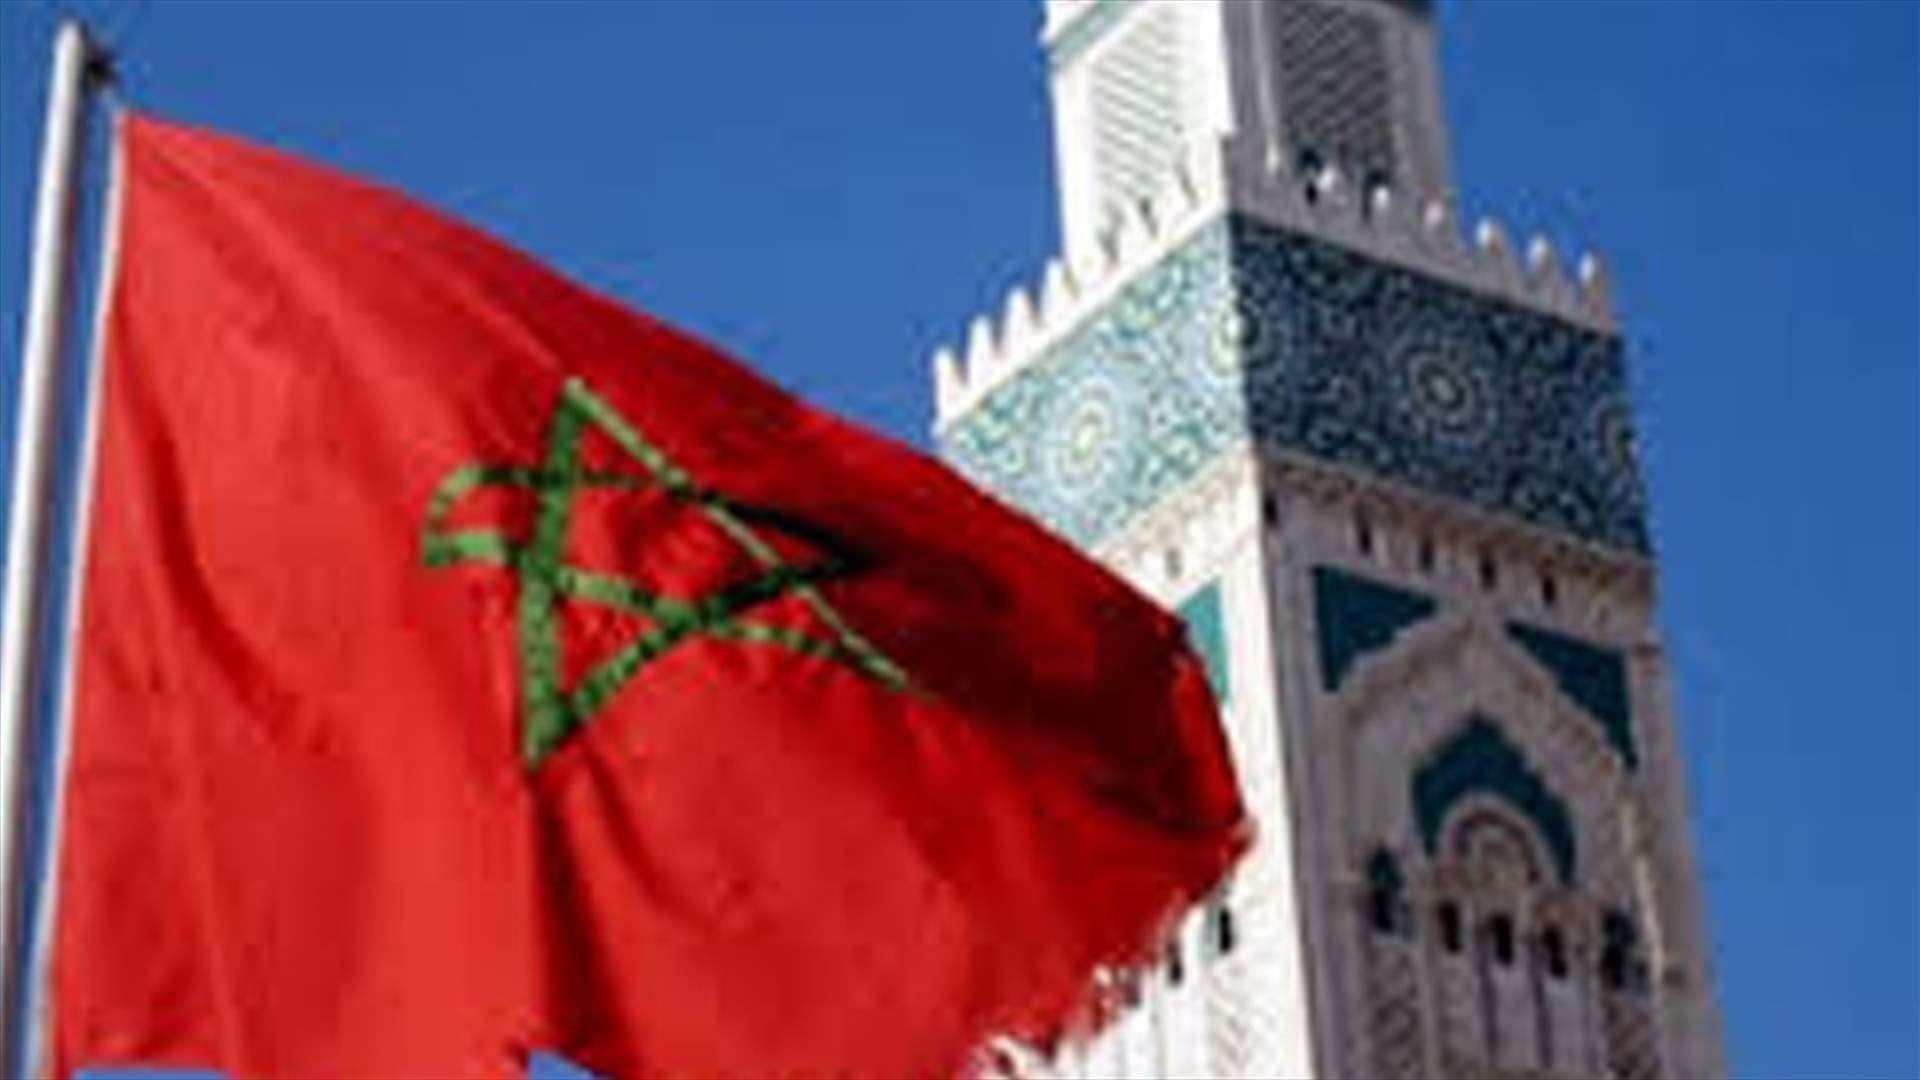 اعتقال شابين وفتاتين في المغرب بتهم الخمر وتبادل القبل في رمضان